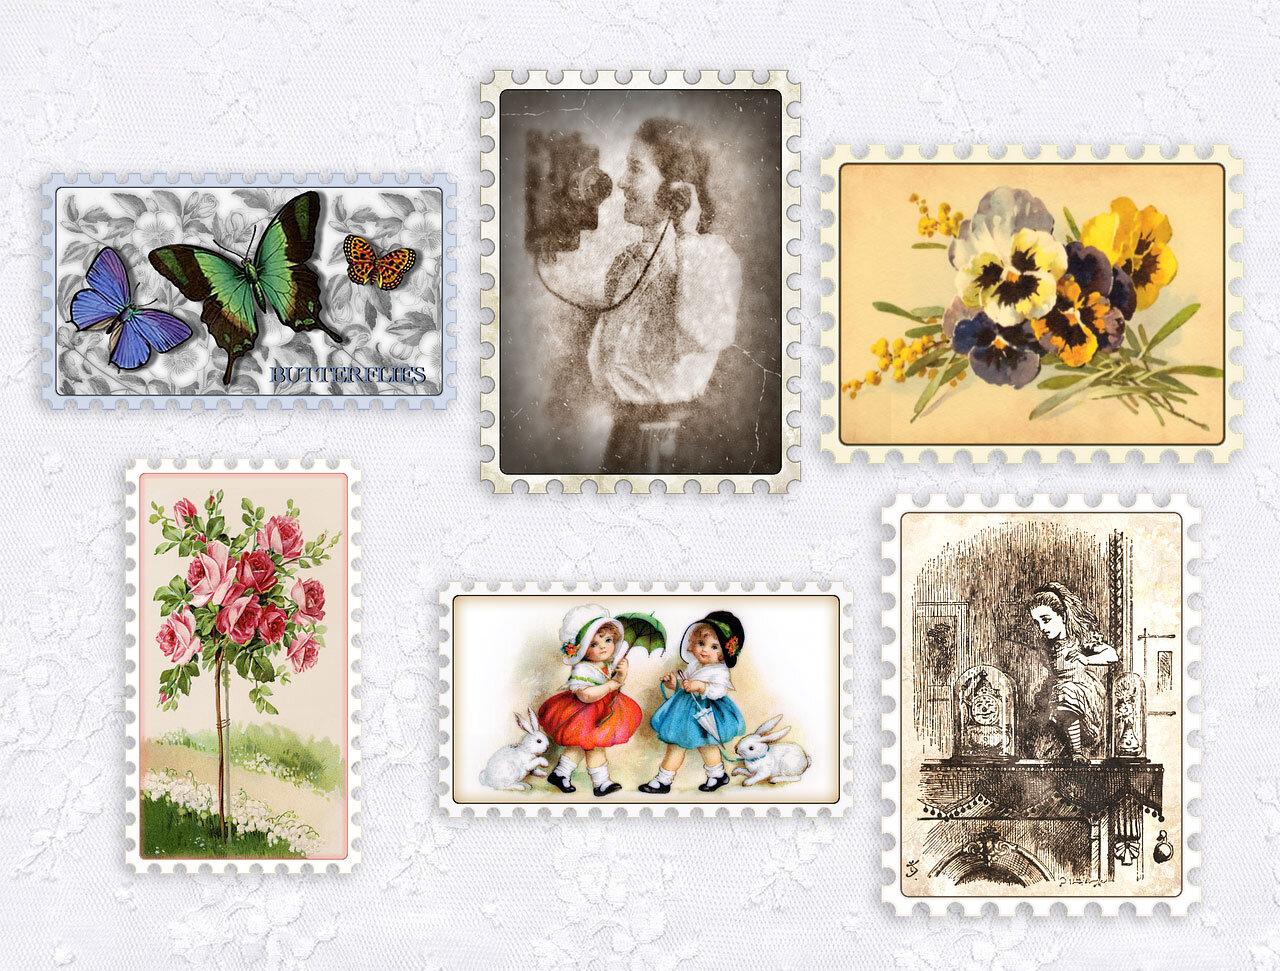 Wall Mural Retro Postage Stamps - for wedding design, invitation, congratul  